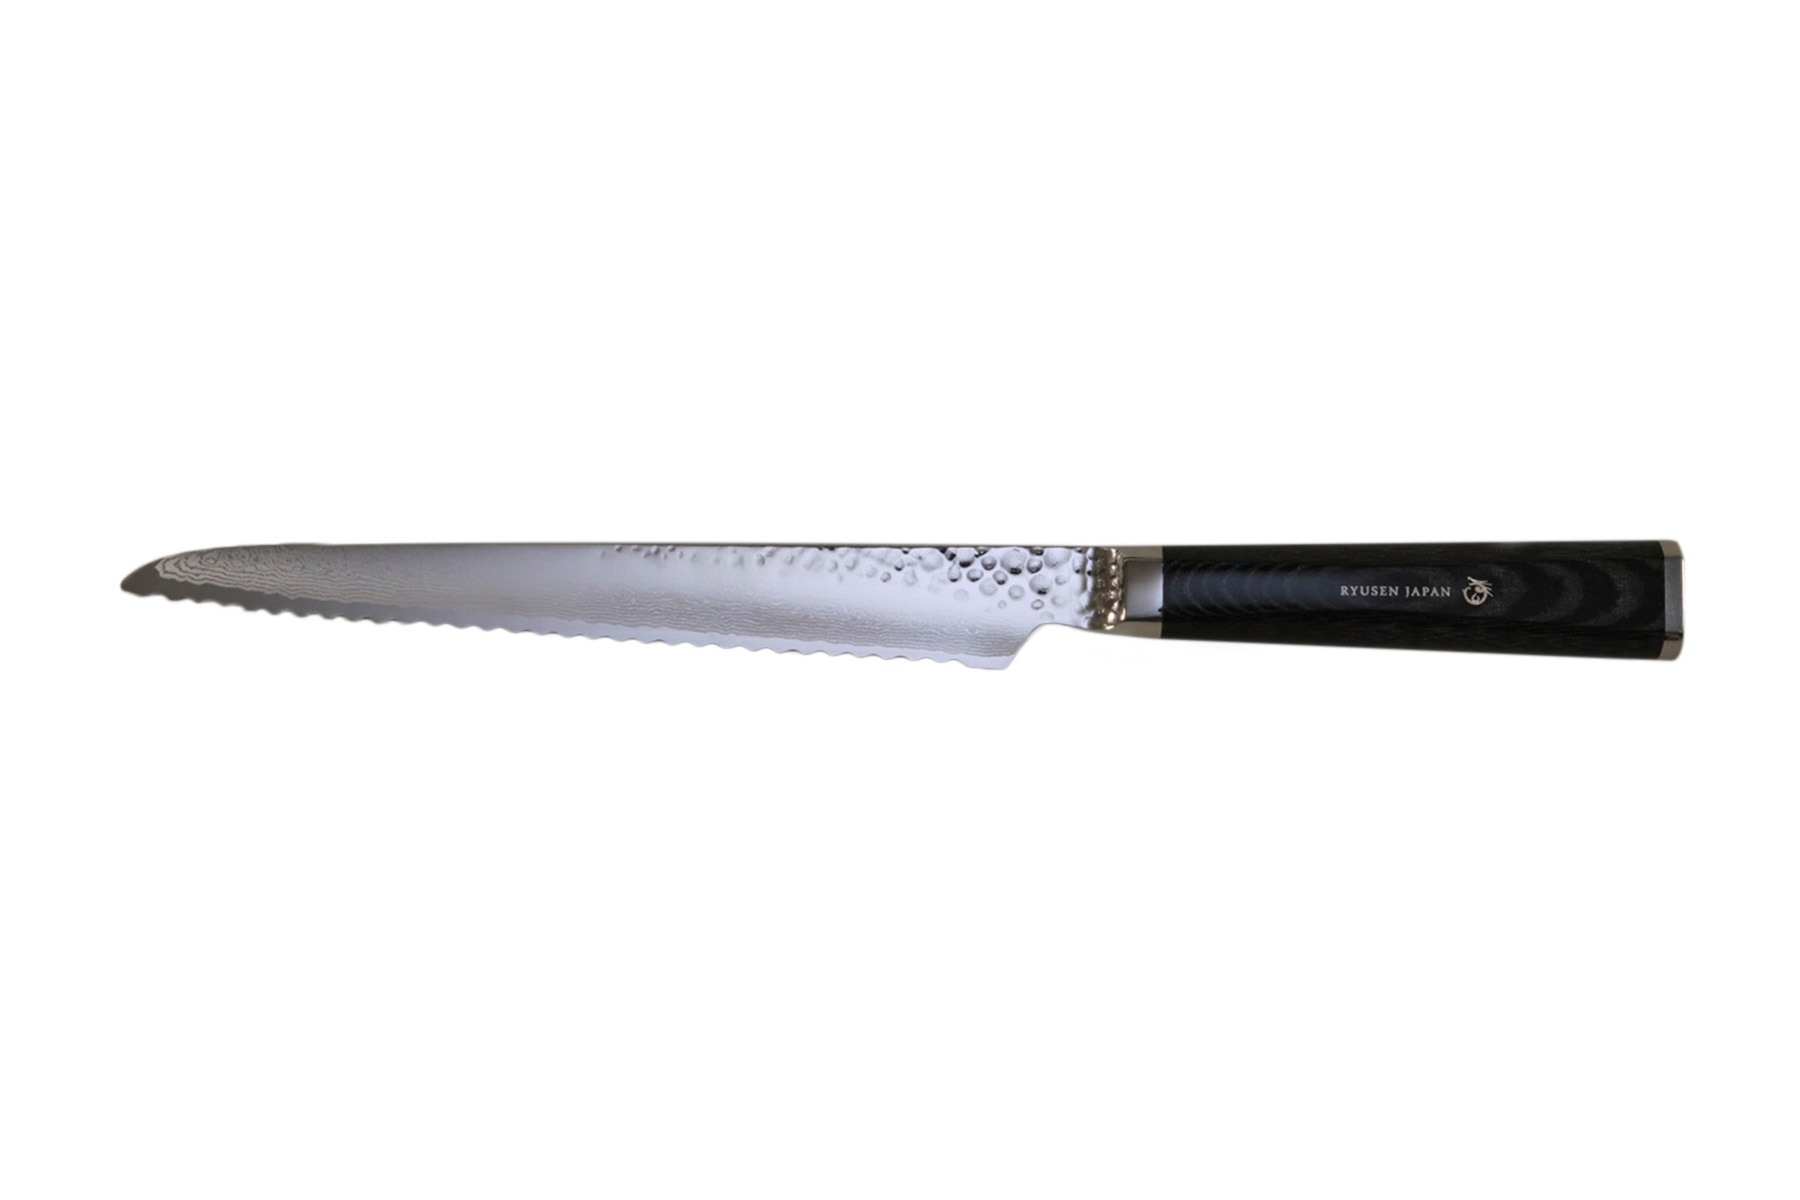 Couteau japonais Ryusen Tangan Ryu micarta - Couteau à pain 21 cm